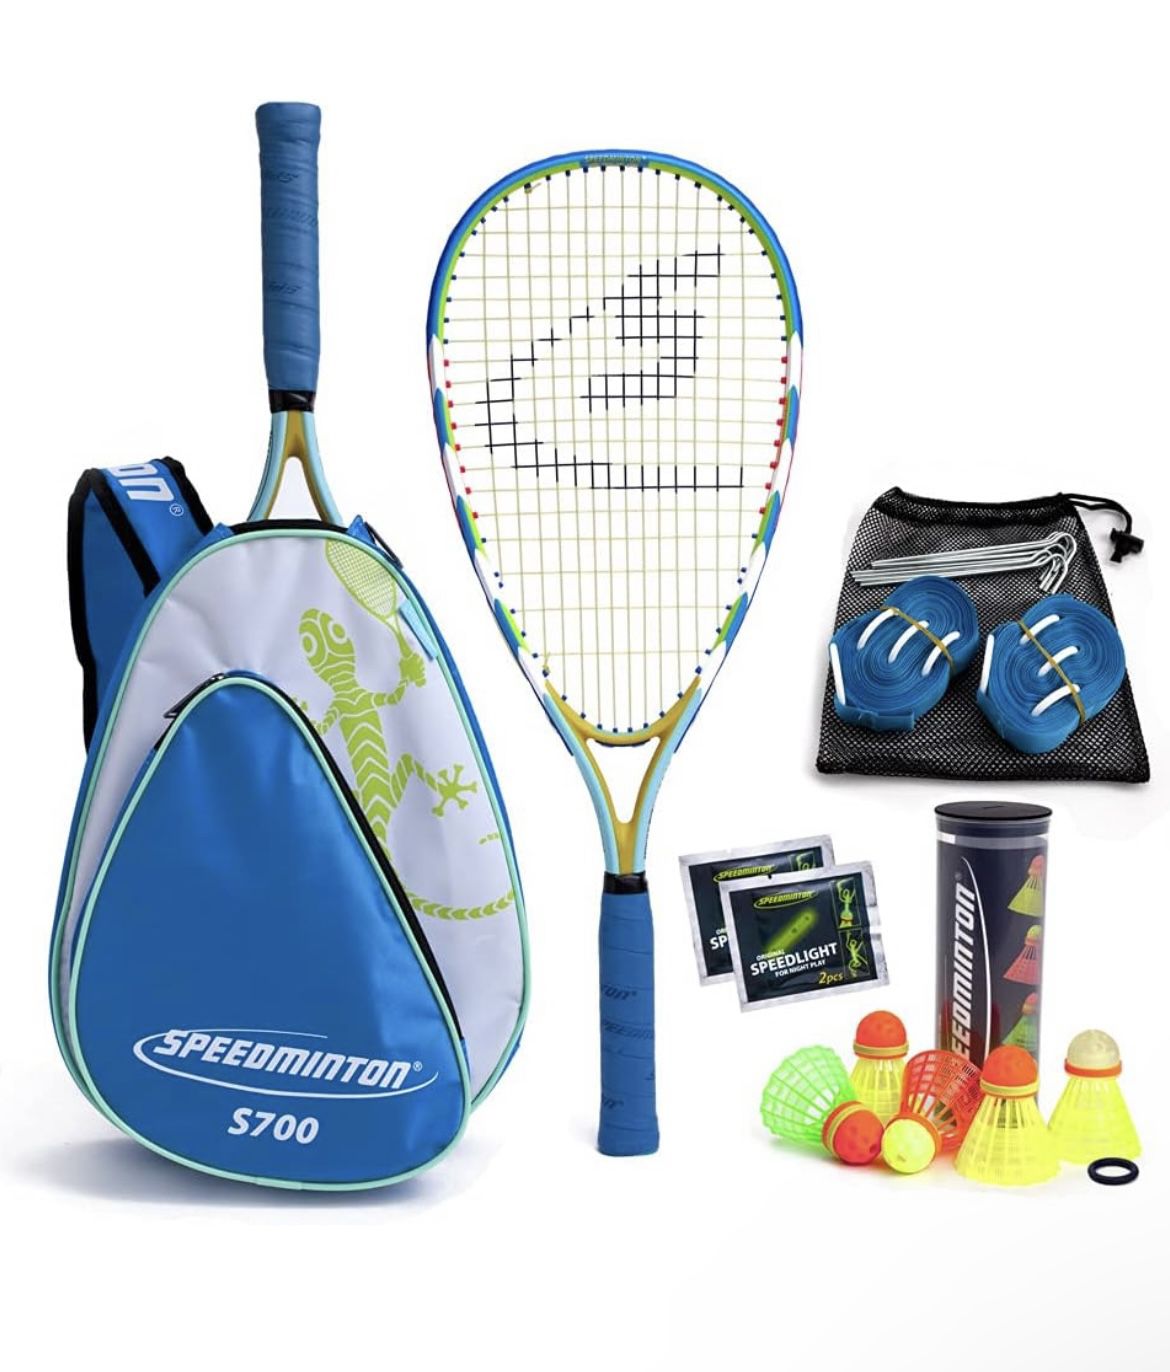 Speedminton S700 Set - Original Speed Badminton/Crossminton Allround Set Including 5 Speeder, Pitch Bag, Bag